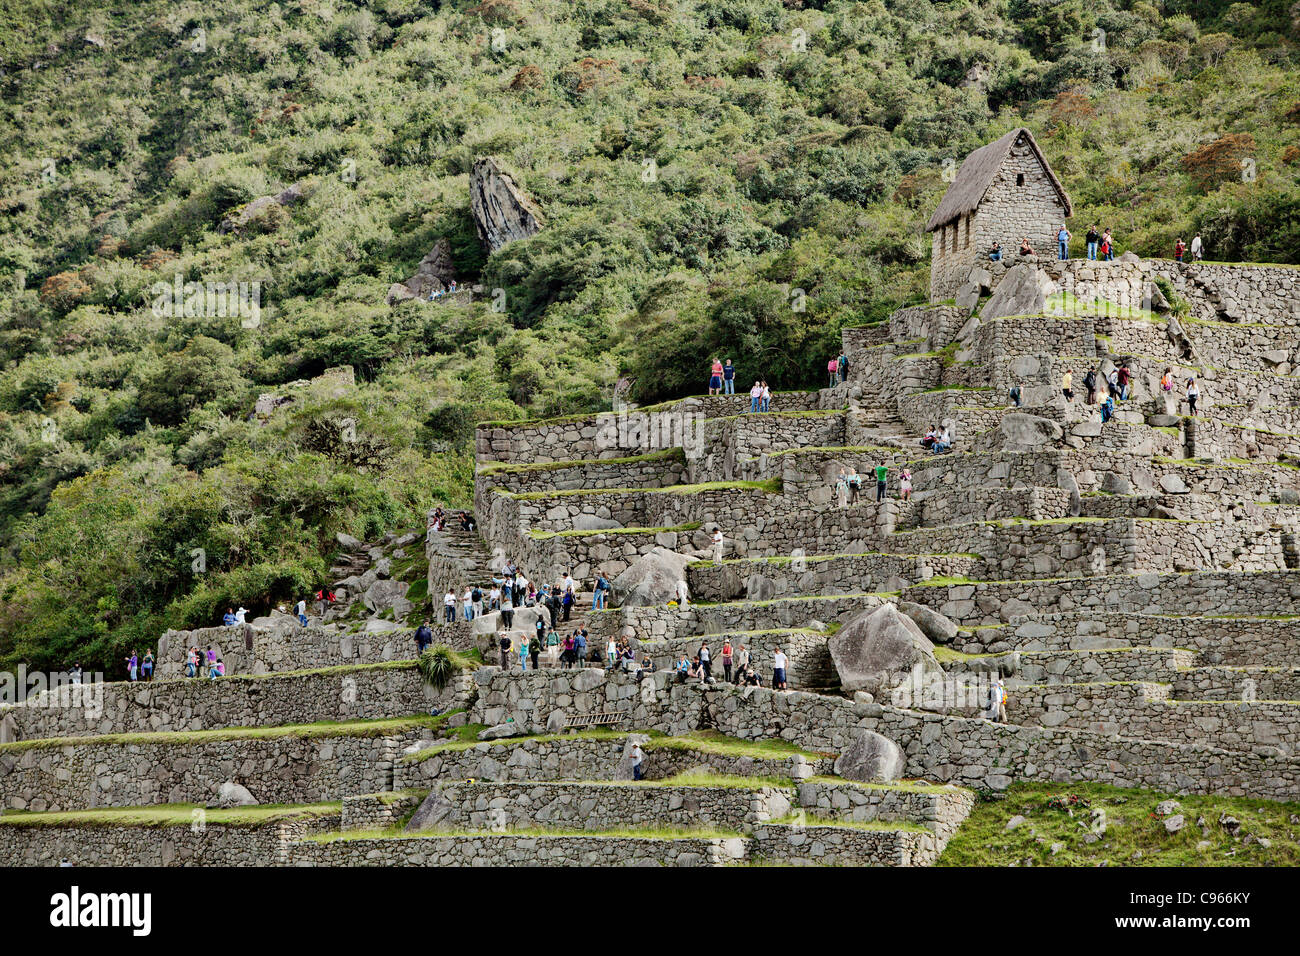 Des centaines de touristes à ancient ruines Incas de Machu Picchu, site touristique le plus connu dans la région de montagnes des Andes, au Pérou. Banque D'Images